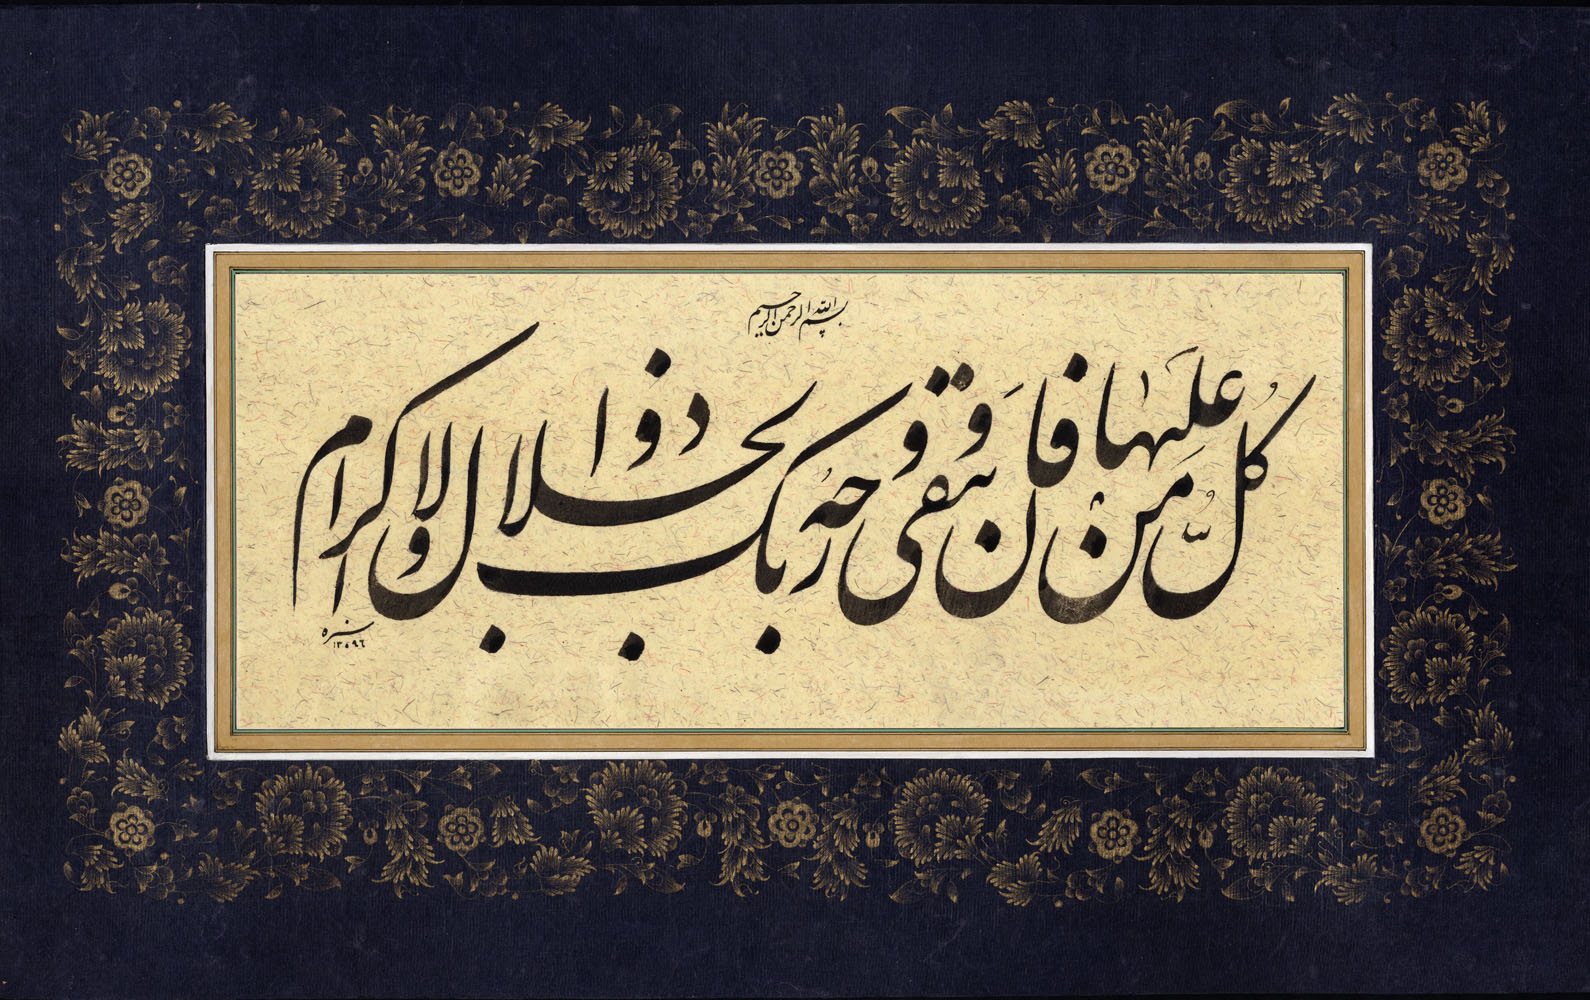 Η Ισλαμική Καλλιγραφία και η Ιρανική Γραφή στο Μουσείο Μπενάκη